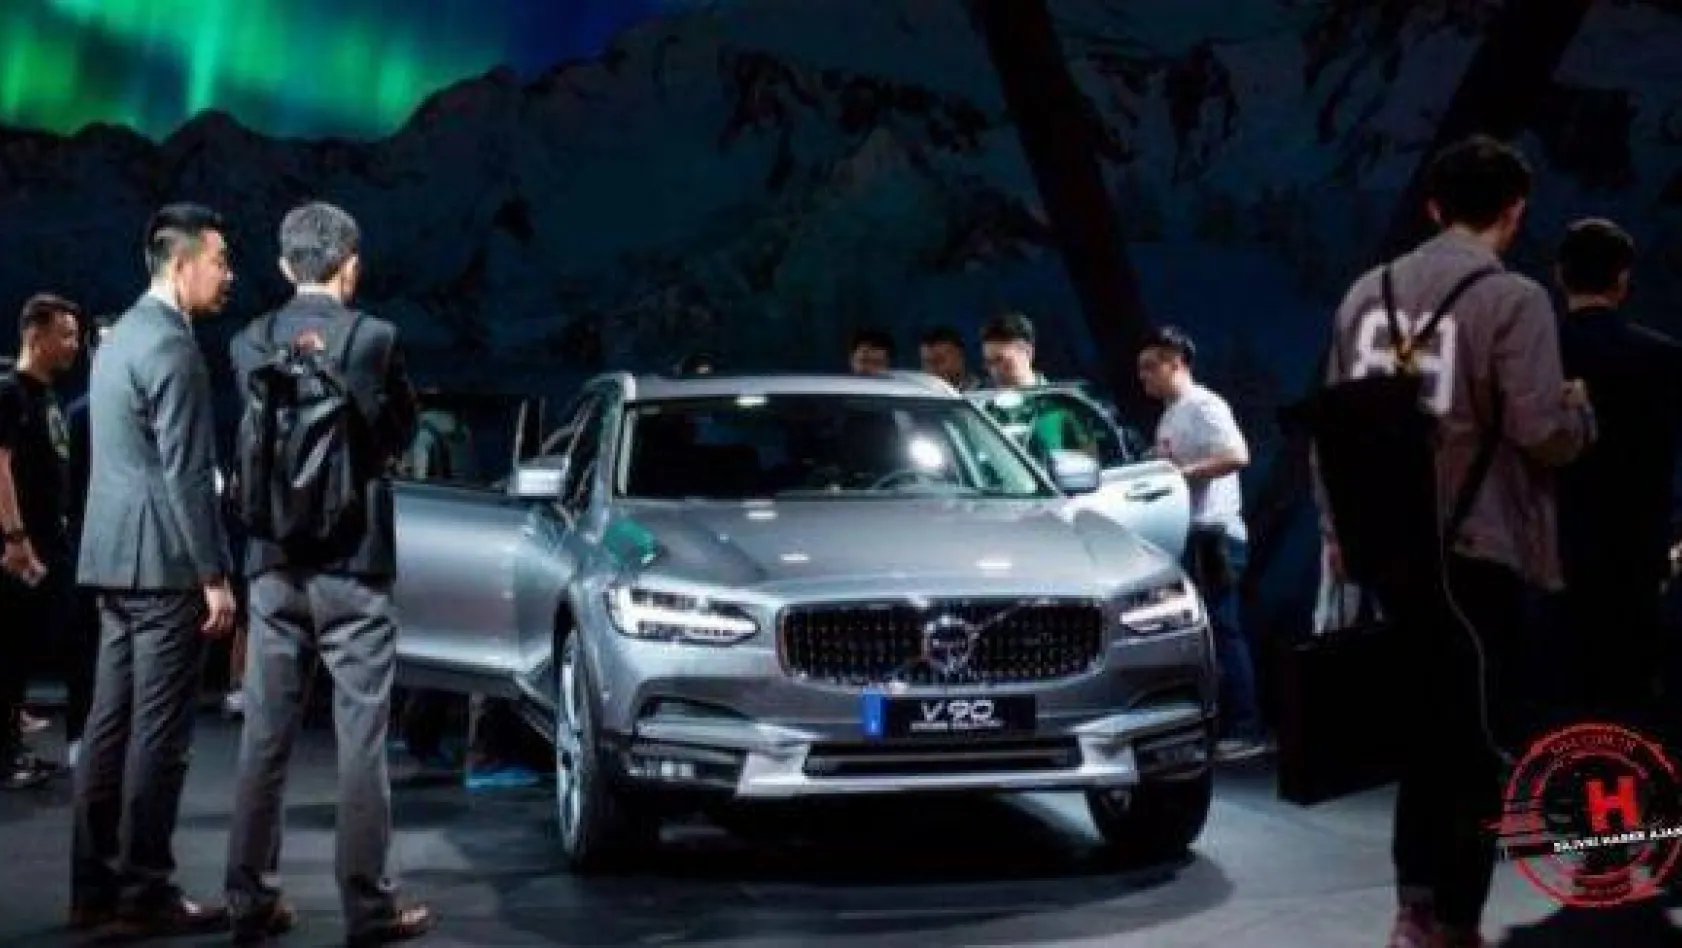 Otomotiv devi Volvo'nun otomotiv sektöre yine ciddi bir imza atacağı gibi görünüyor.